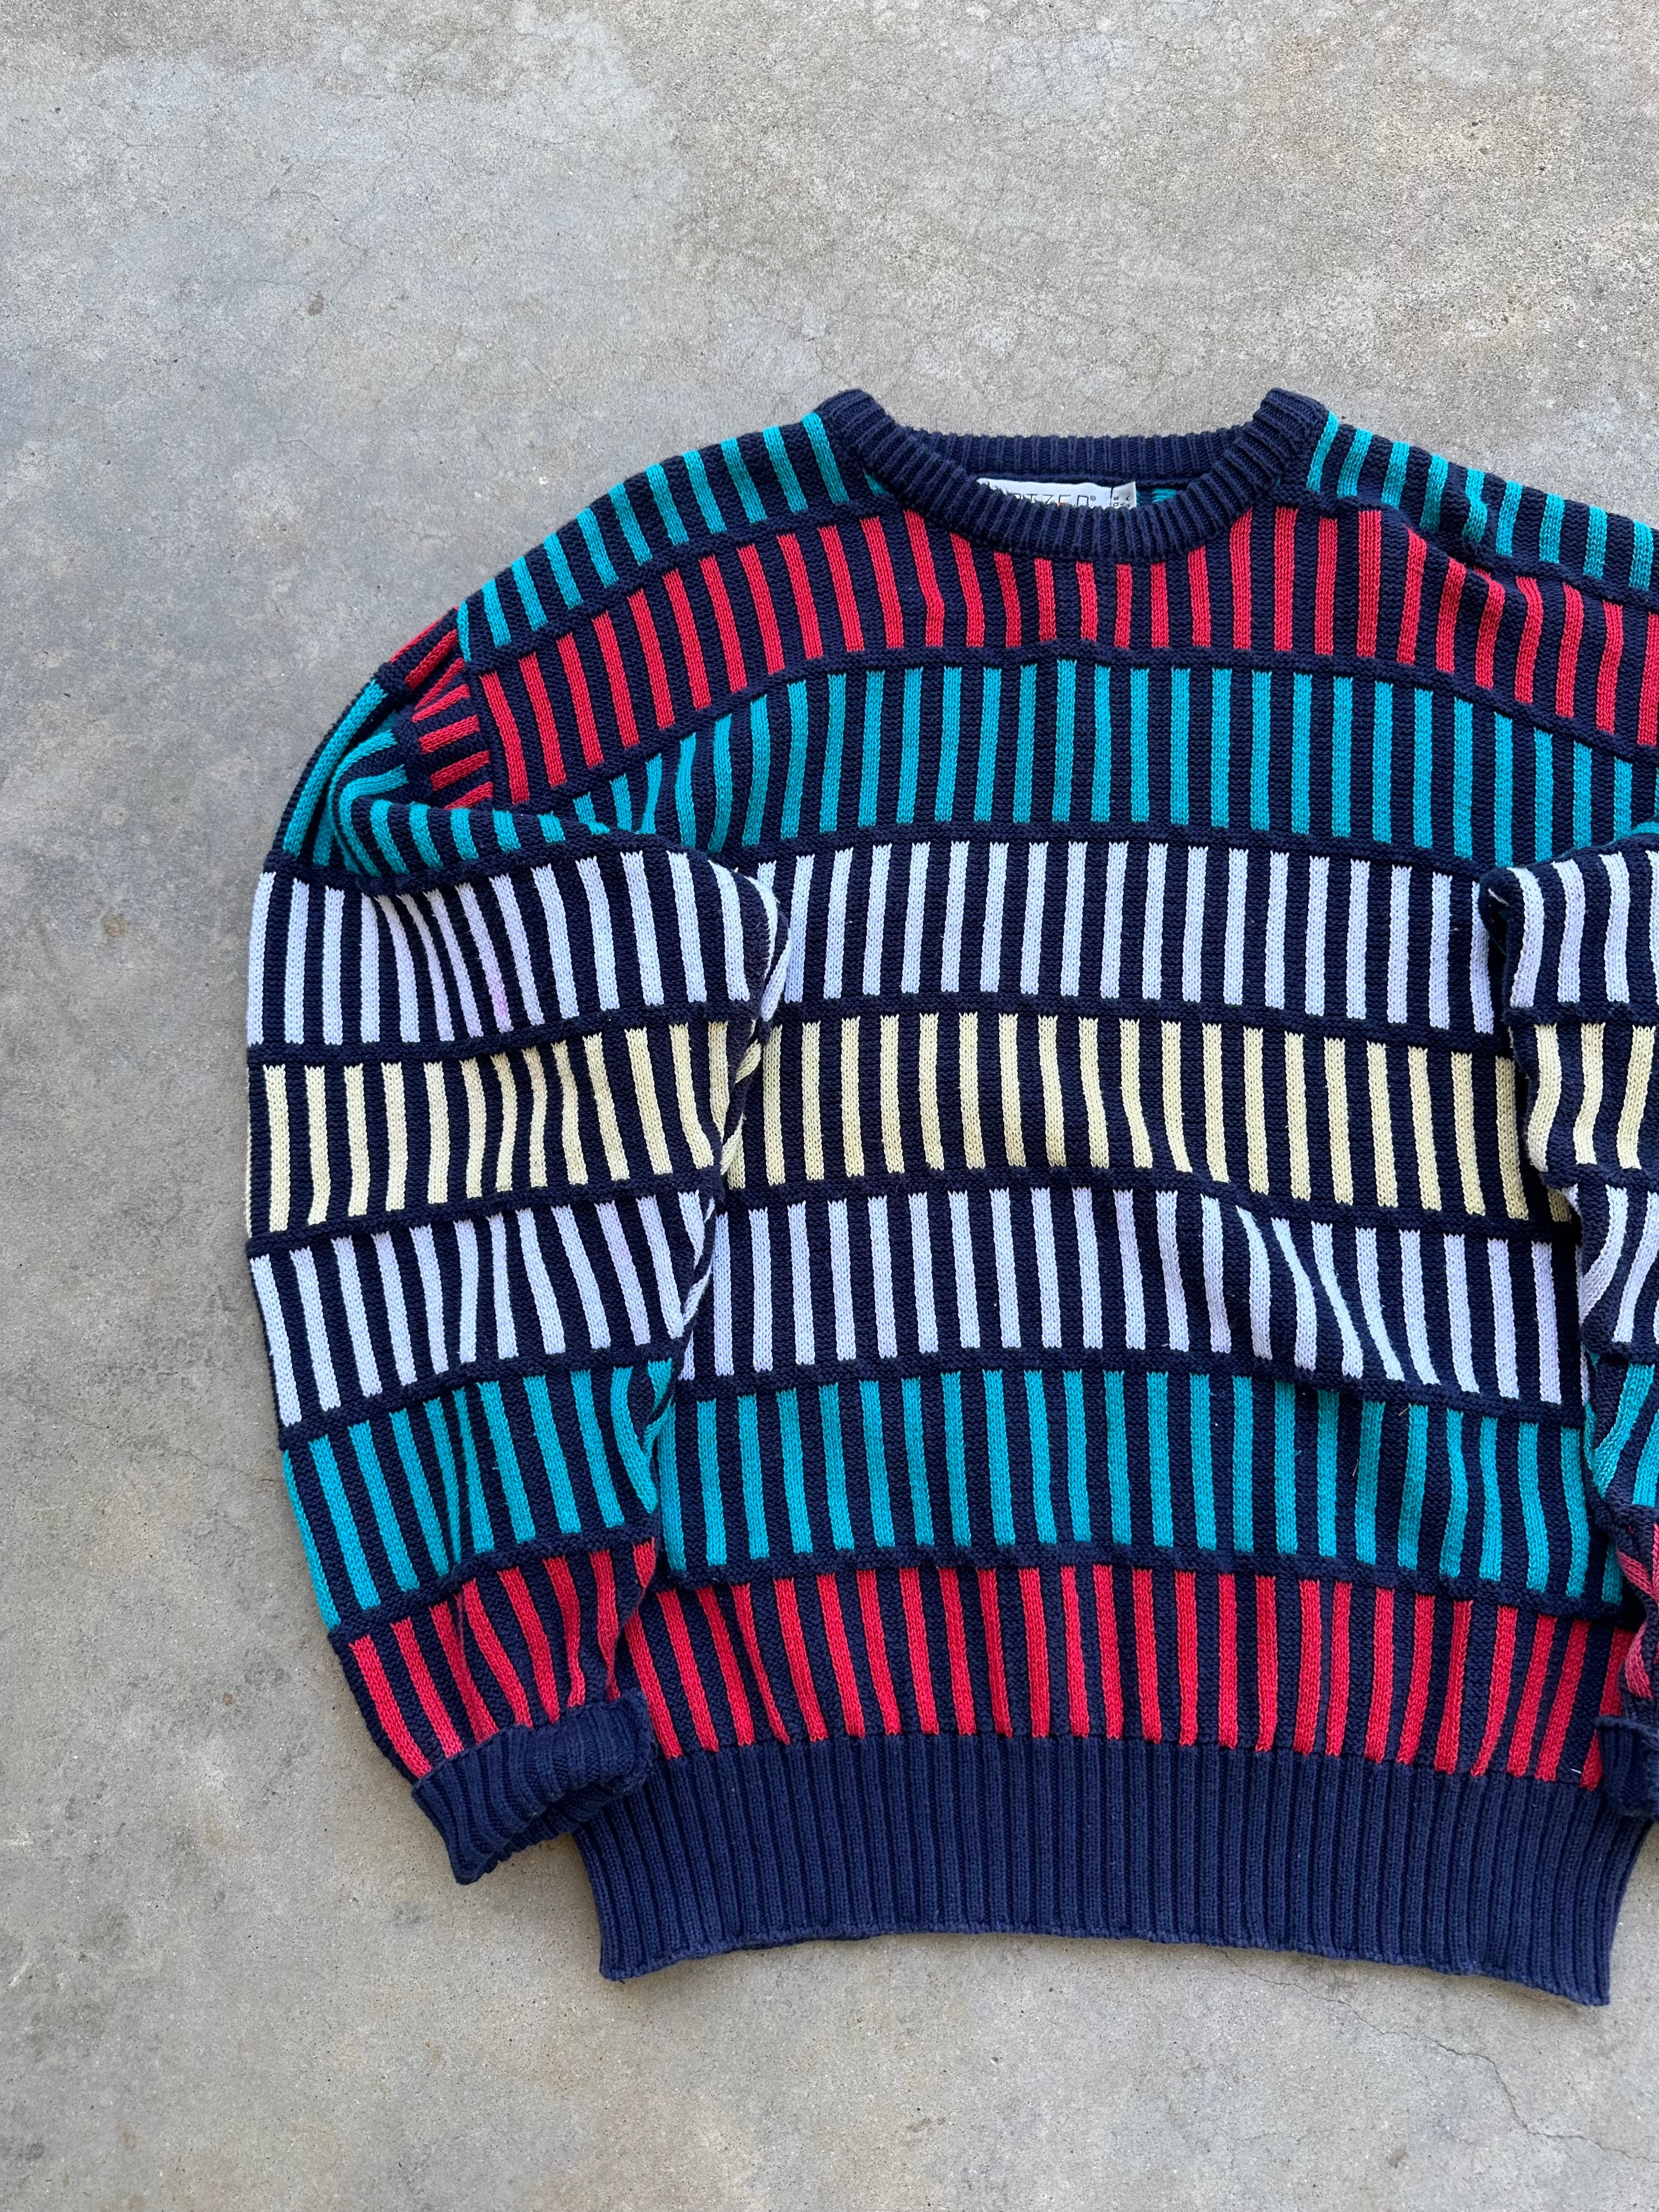 Vintage Faded Jantzen Knit Sweater